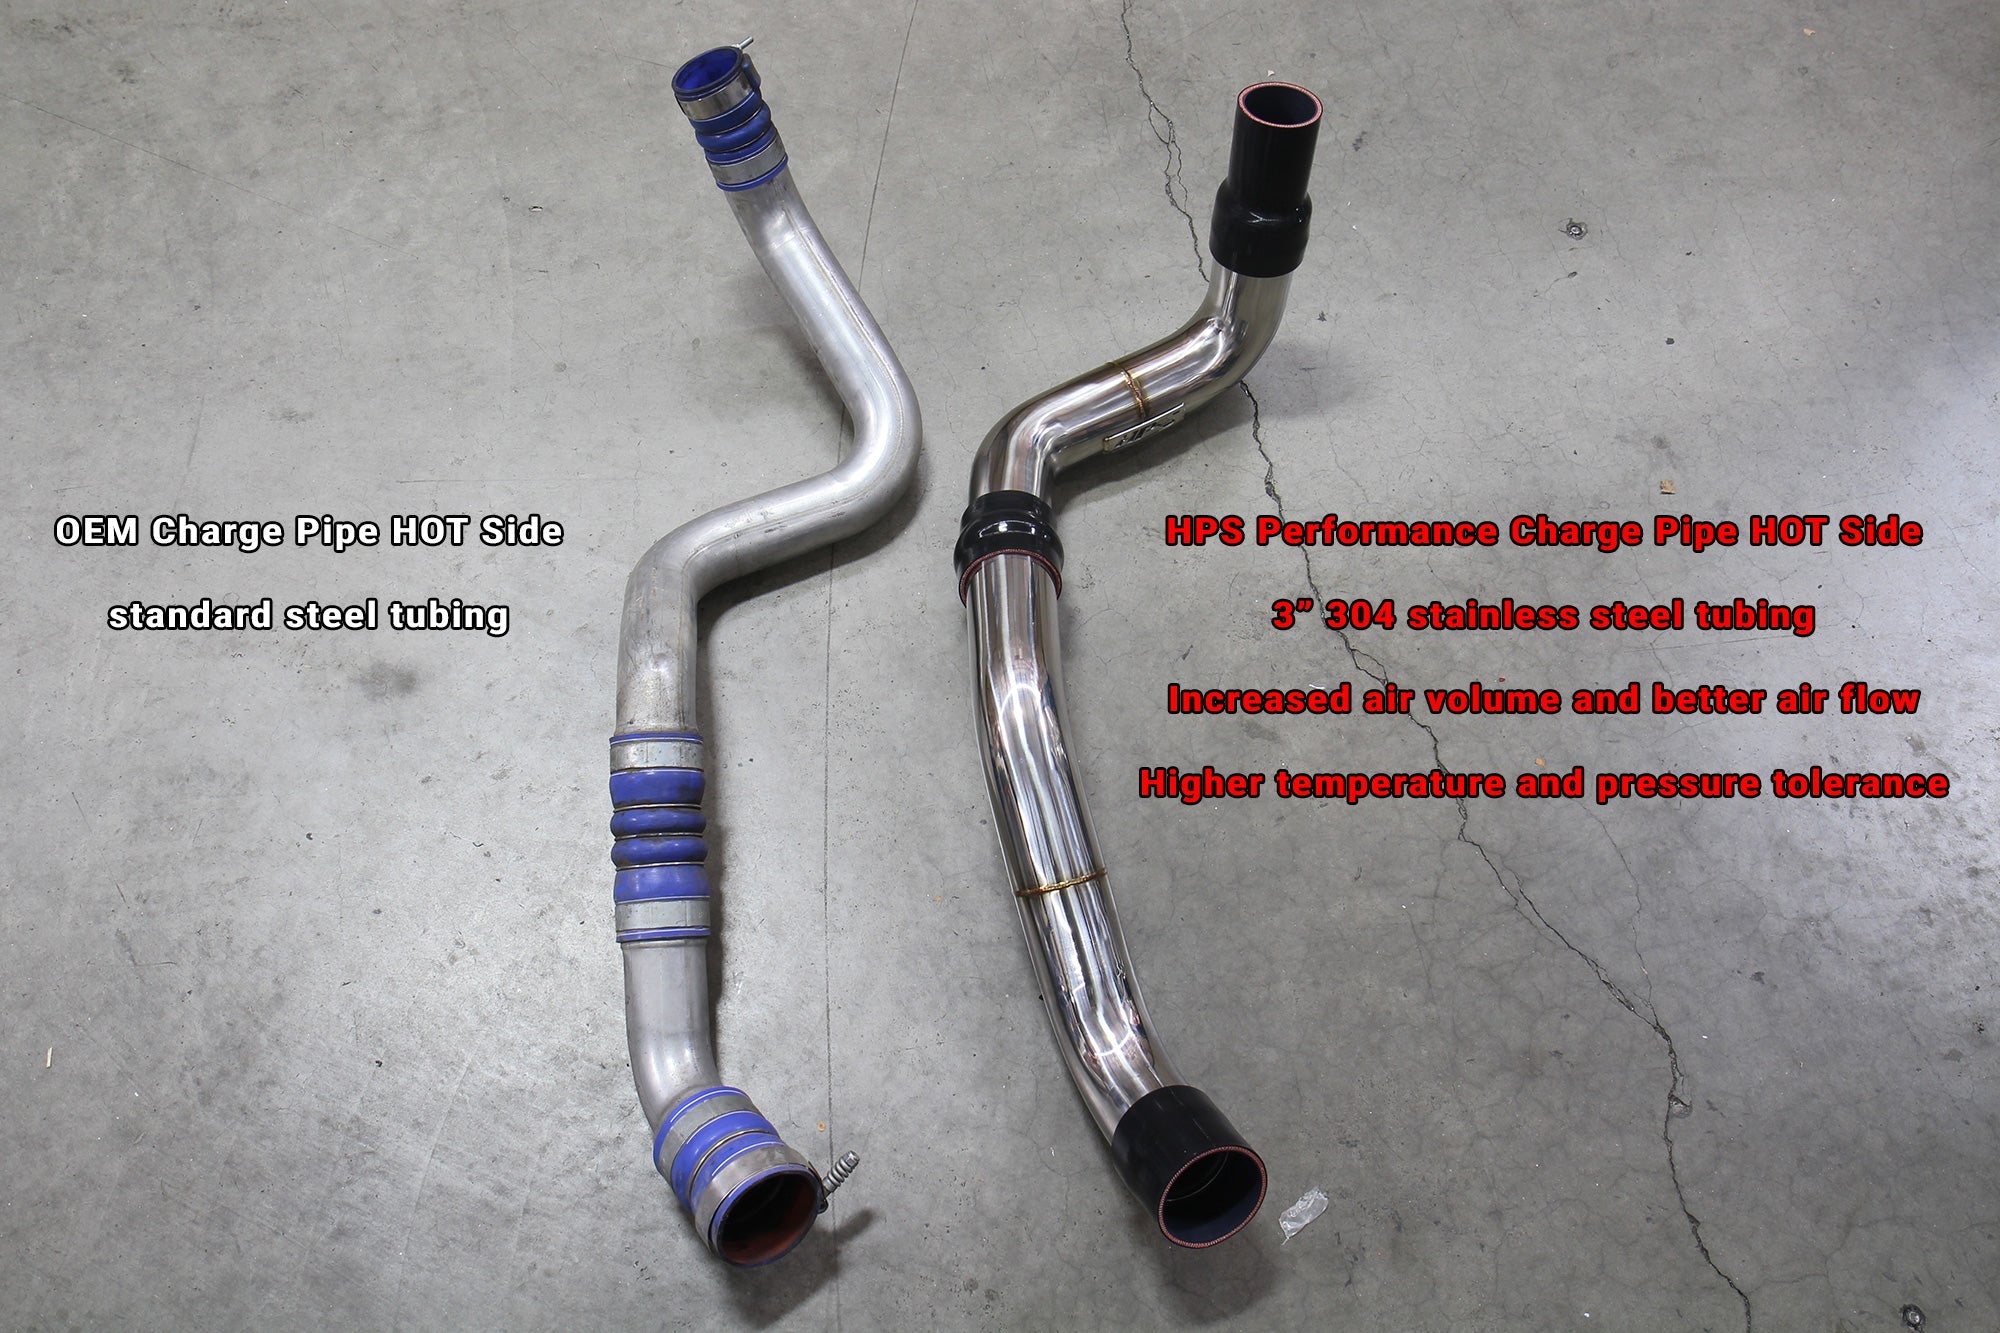 HPS 3" Stainless Steel Charge Pipe Hot Side vs OEM Chevy Silverado 3500HD 6.6L Duramax Diesel Turbo LML 17-126P